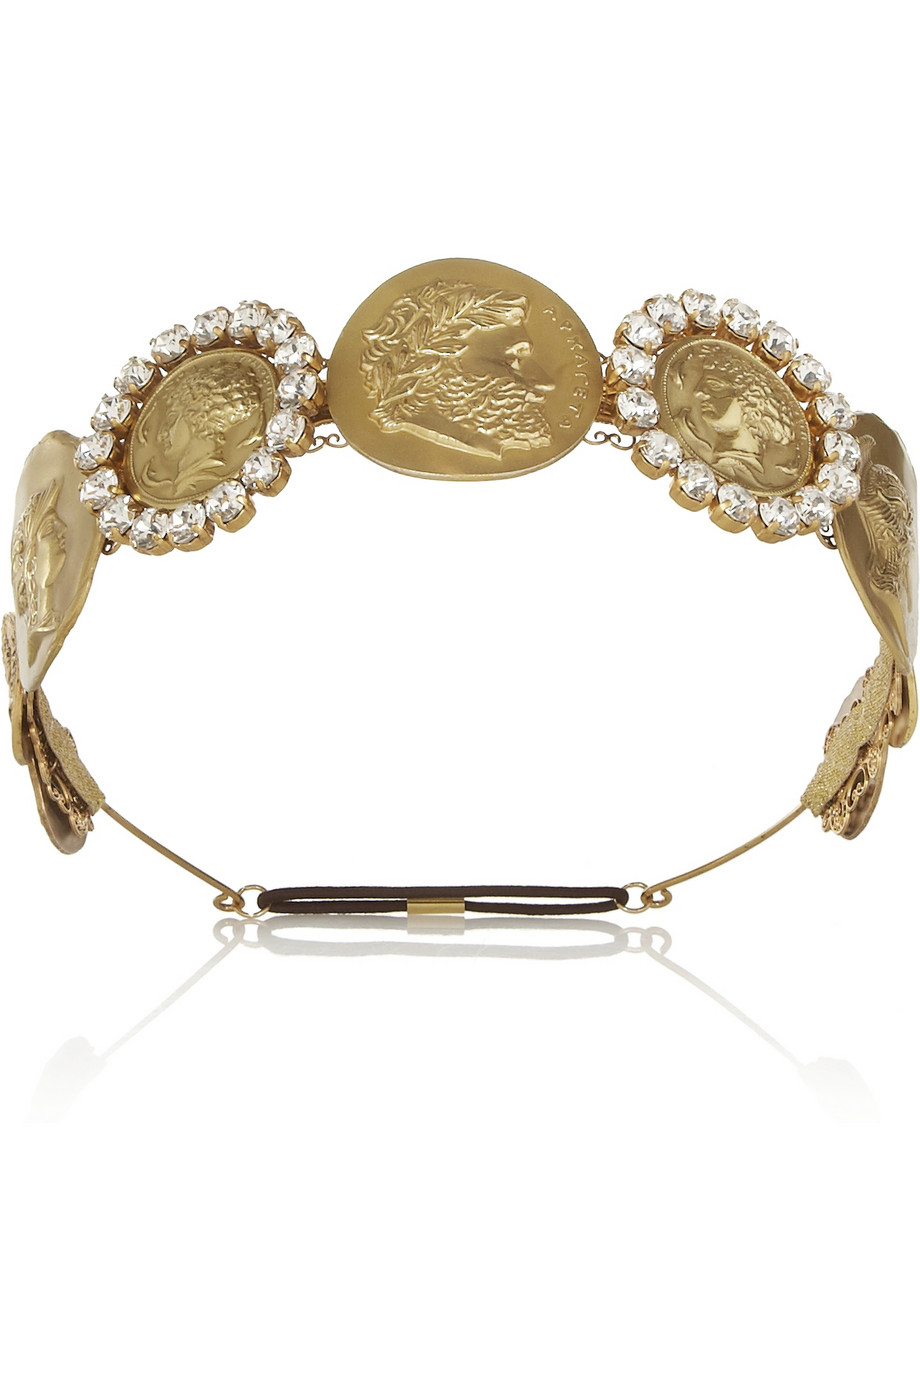 Dolce & Gabbana Gold-Tone Swarovski Crystal Coin Headband in Metallic | Lyst